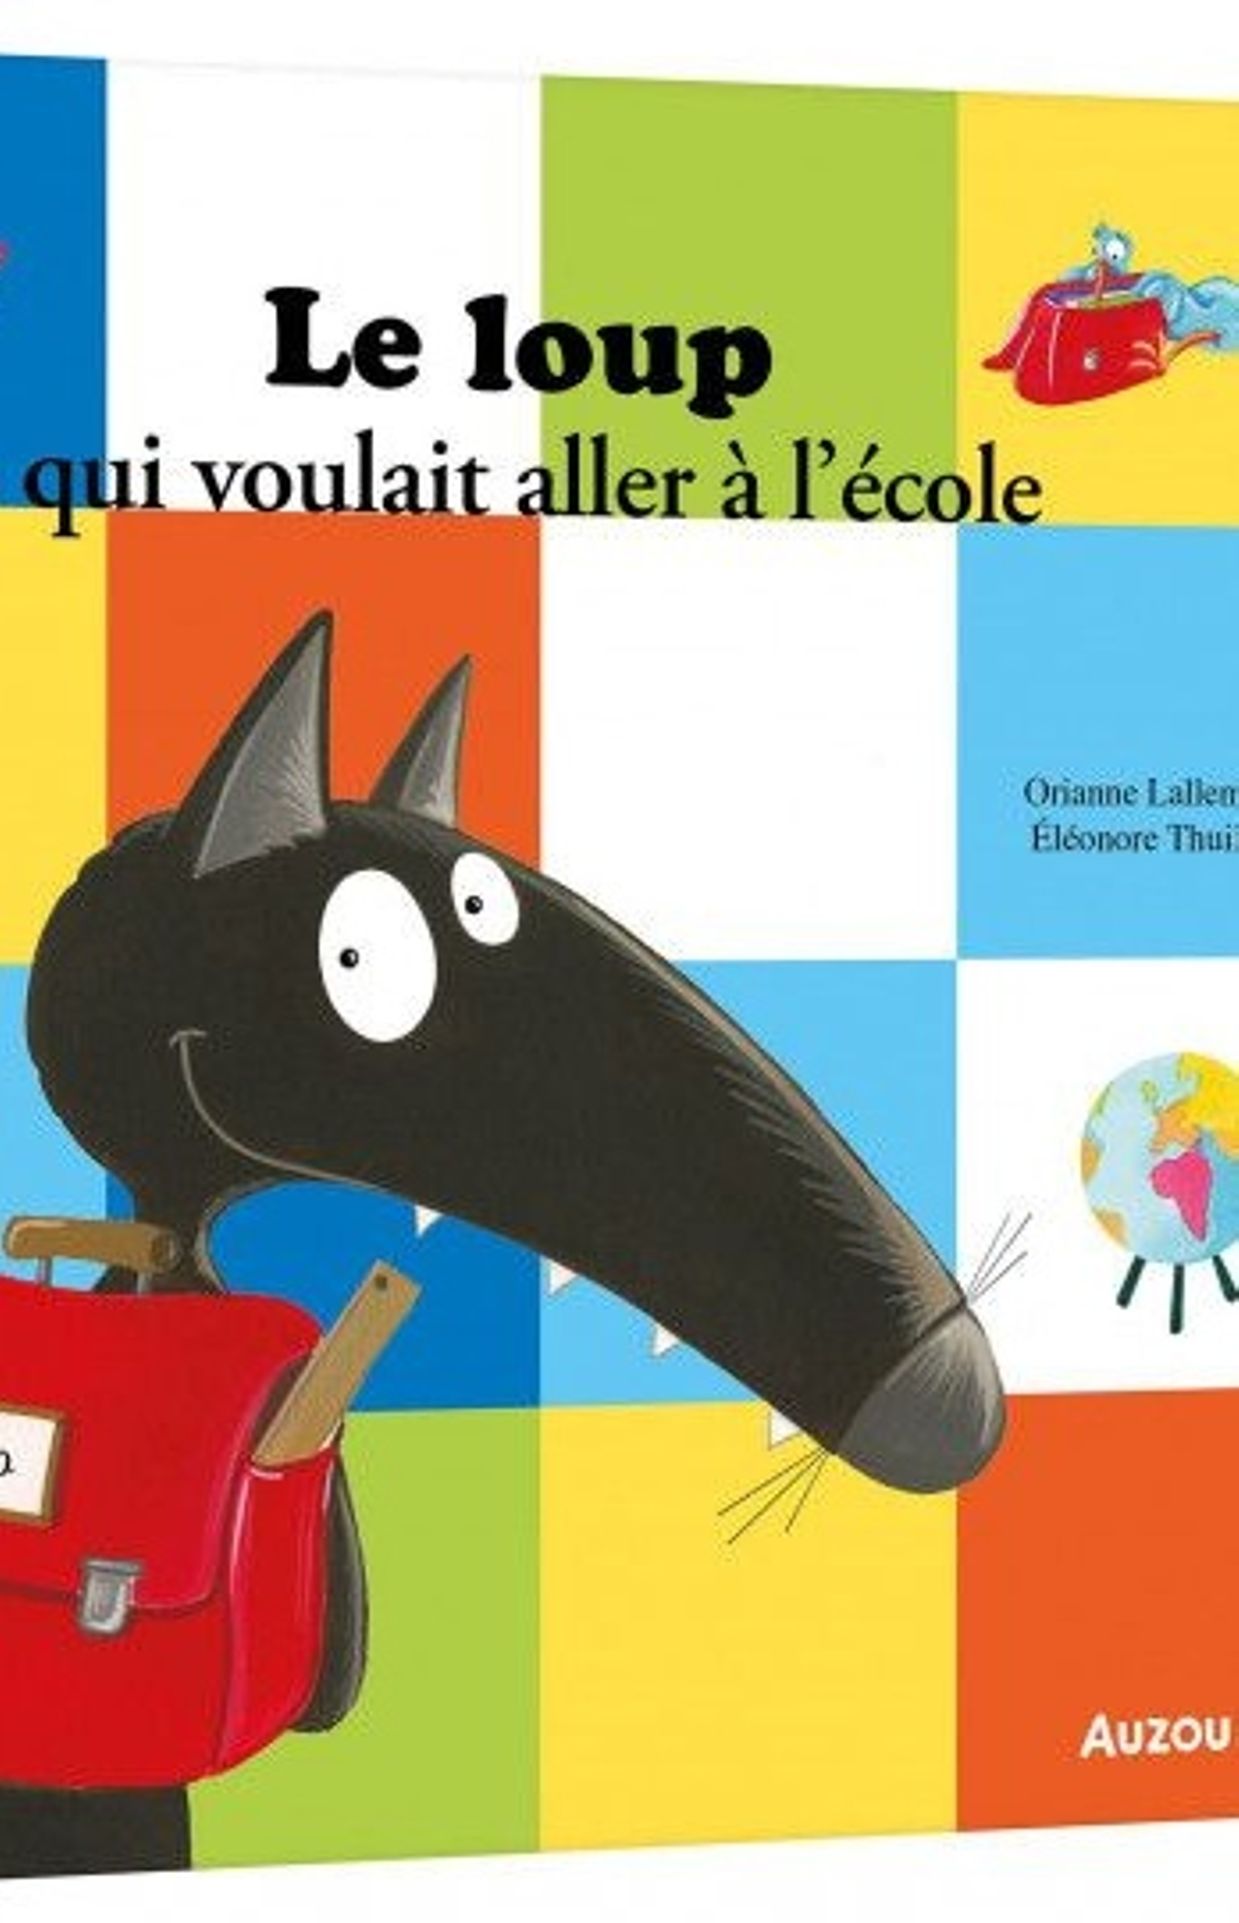 Photo d'illustration du livre " Le loup qui voulait aller à l'école" , écrit par Orianne Lallemand, autrice de littérature jeunesse. 